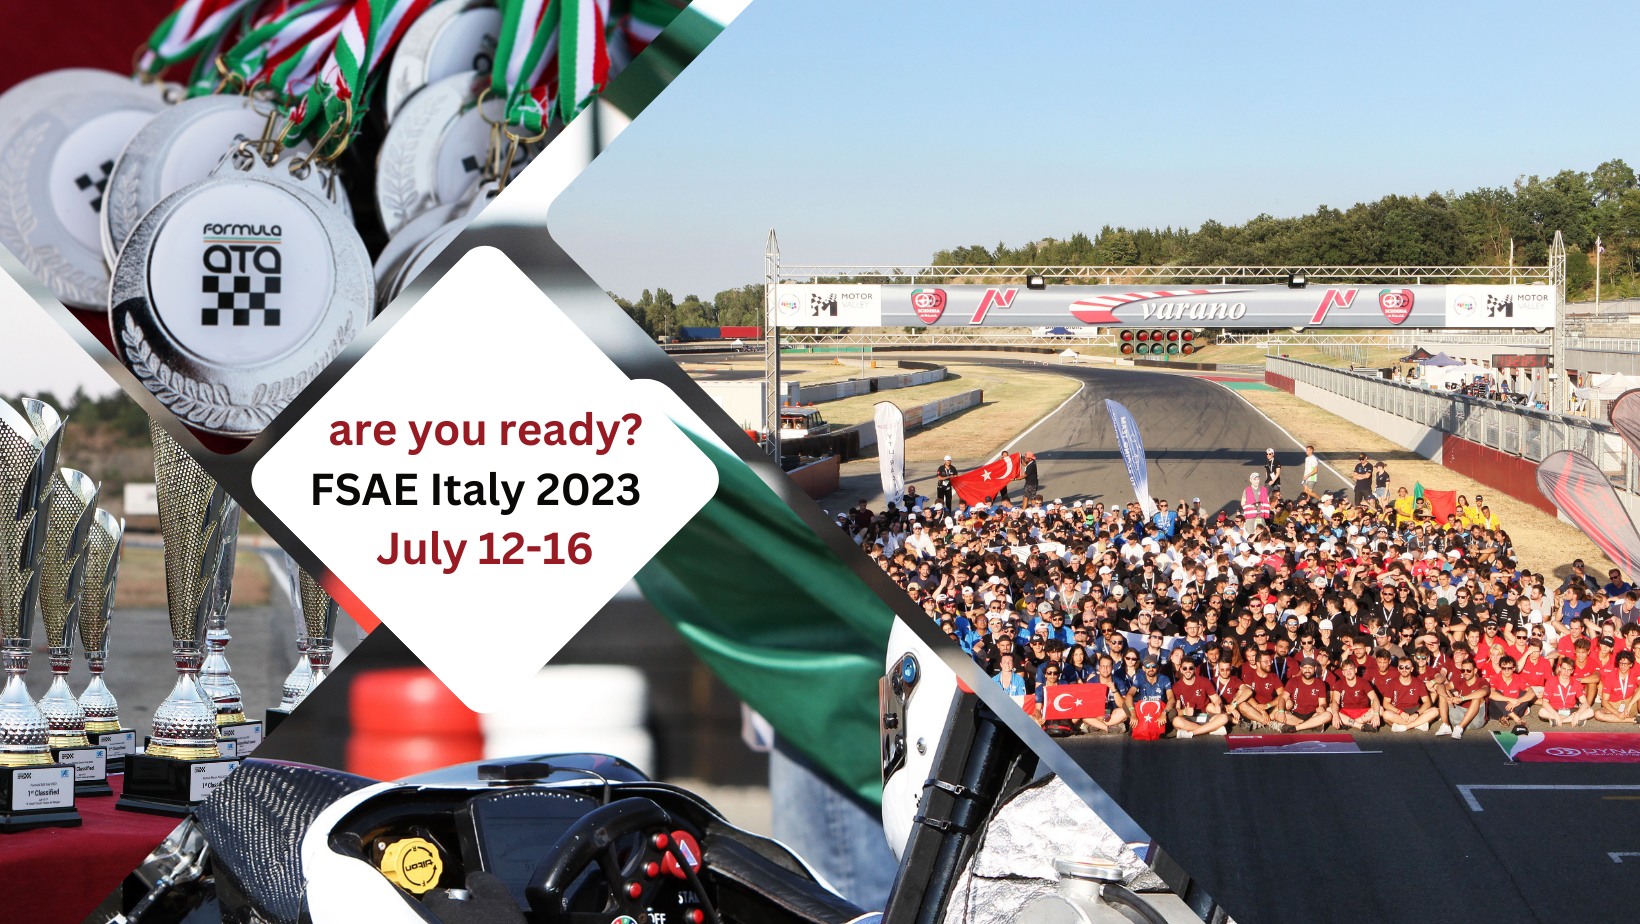 Dal 12 al 16 luglio la XVIII edizione della Formula SAE Italy